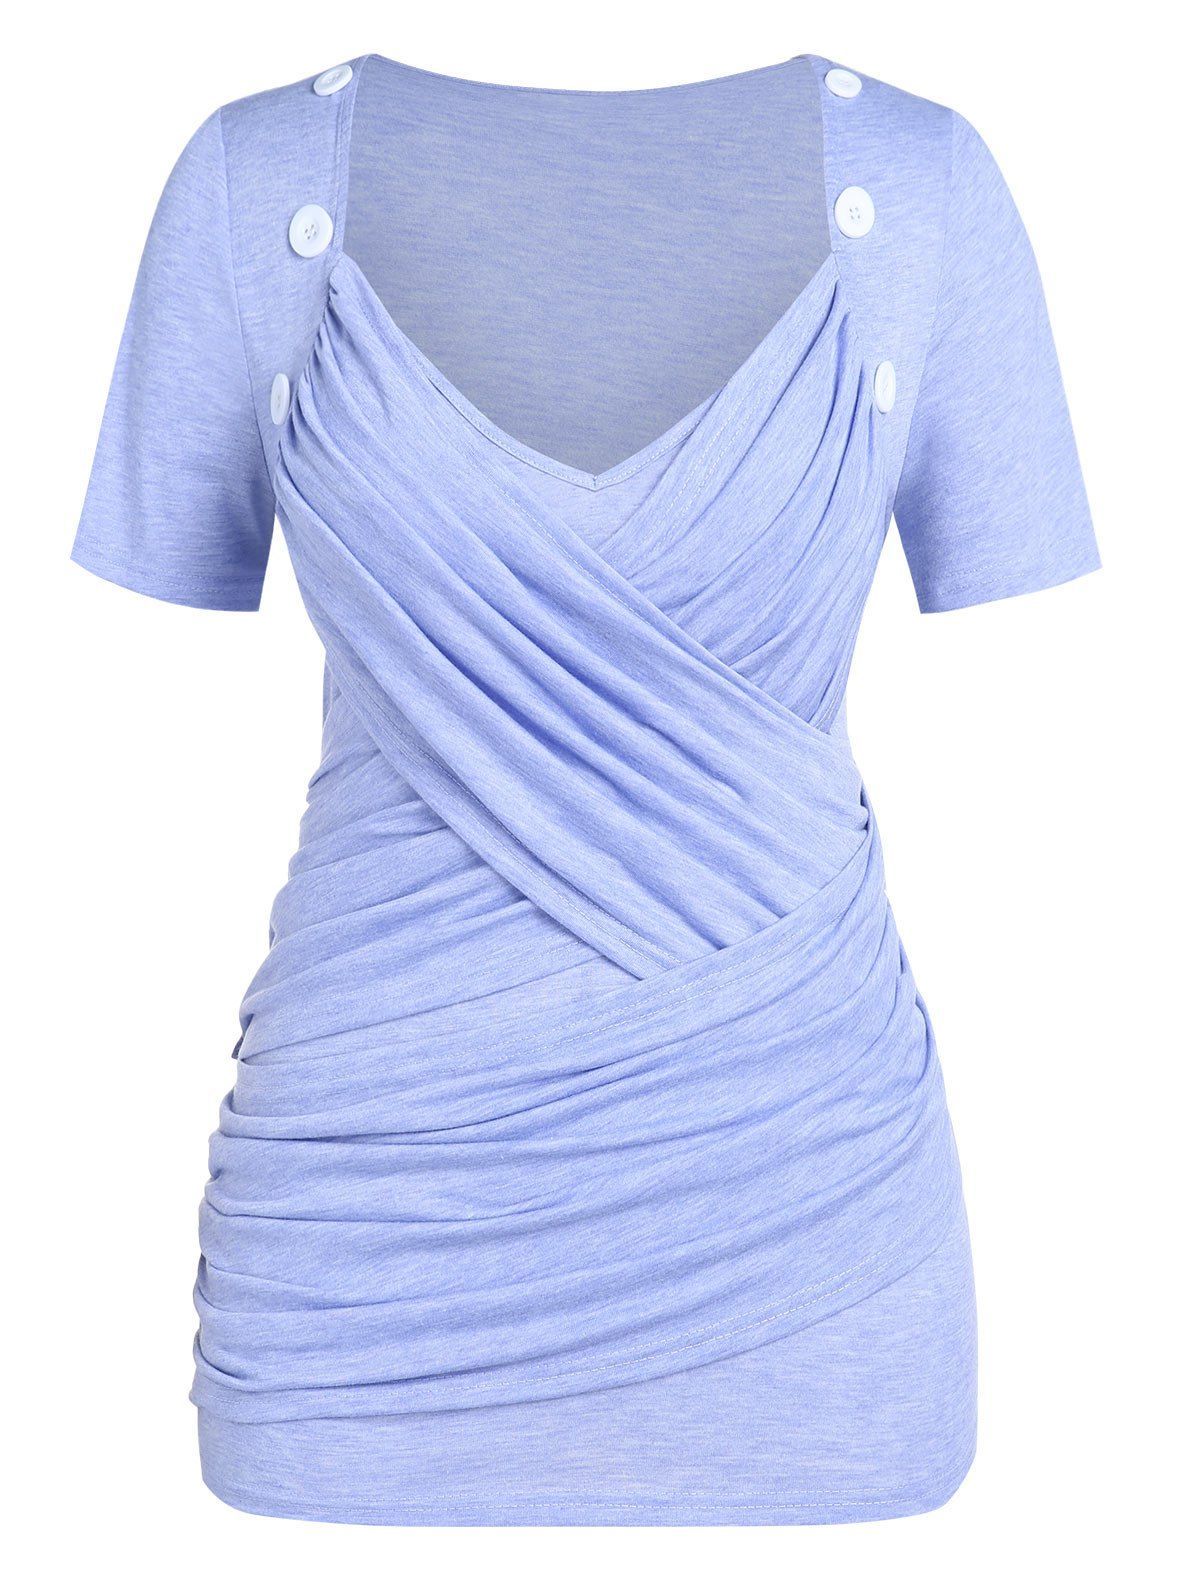 T-Shirt Froncé avec Croisés Grande-Taille - Violet clair 3X